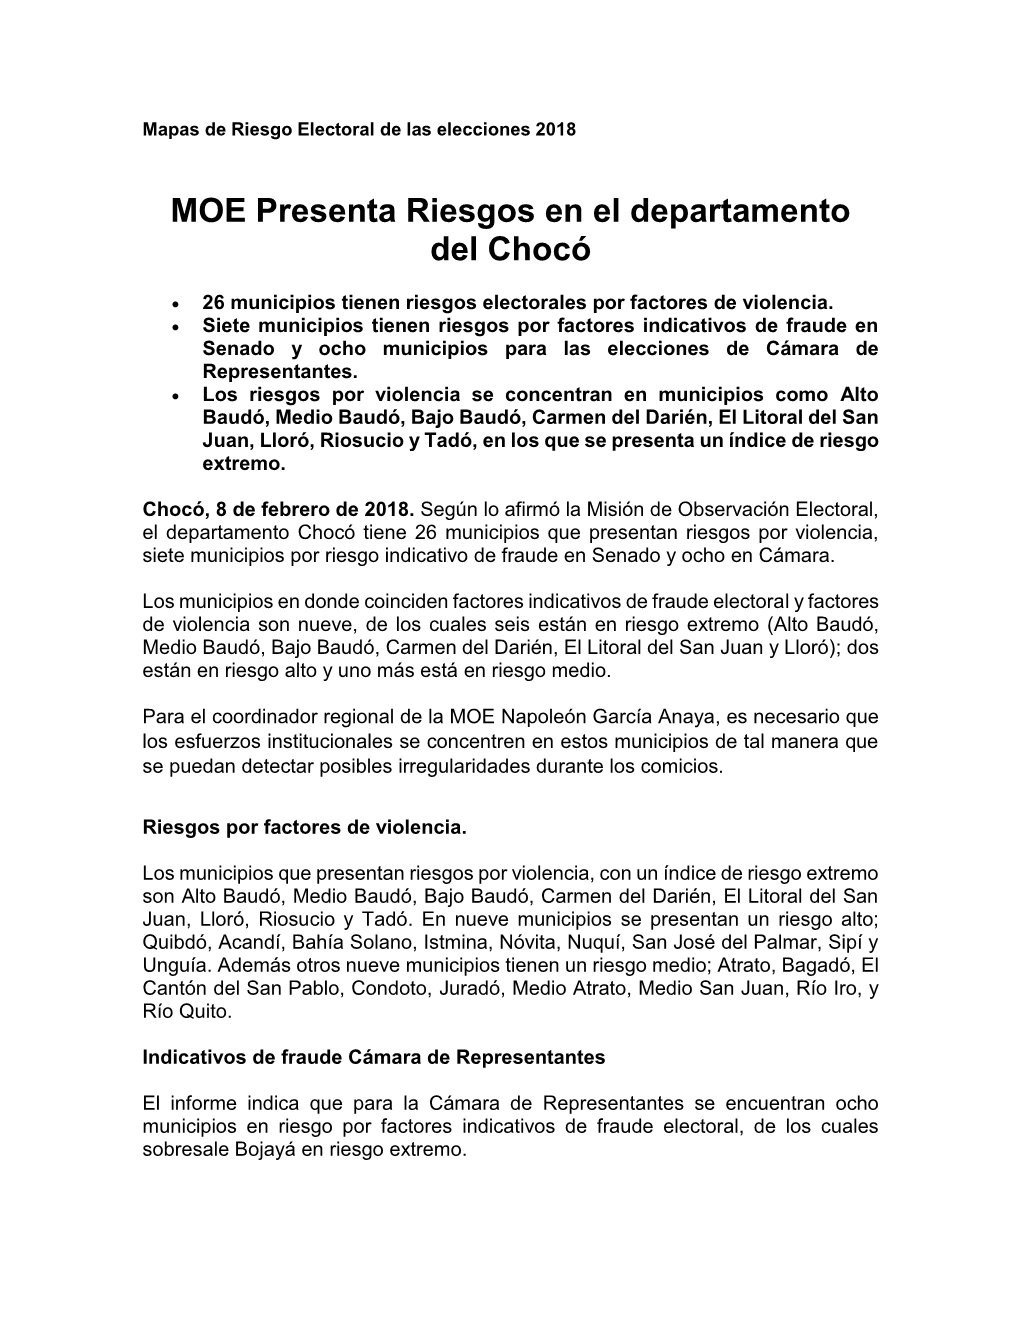 MOE Presenta Riesgos En El Departamento Del Chocó